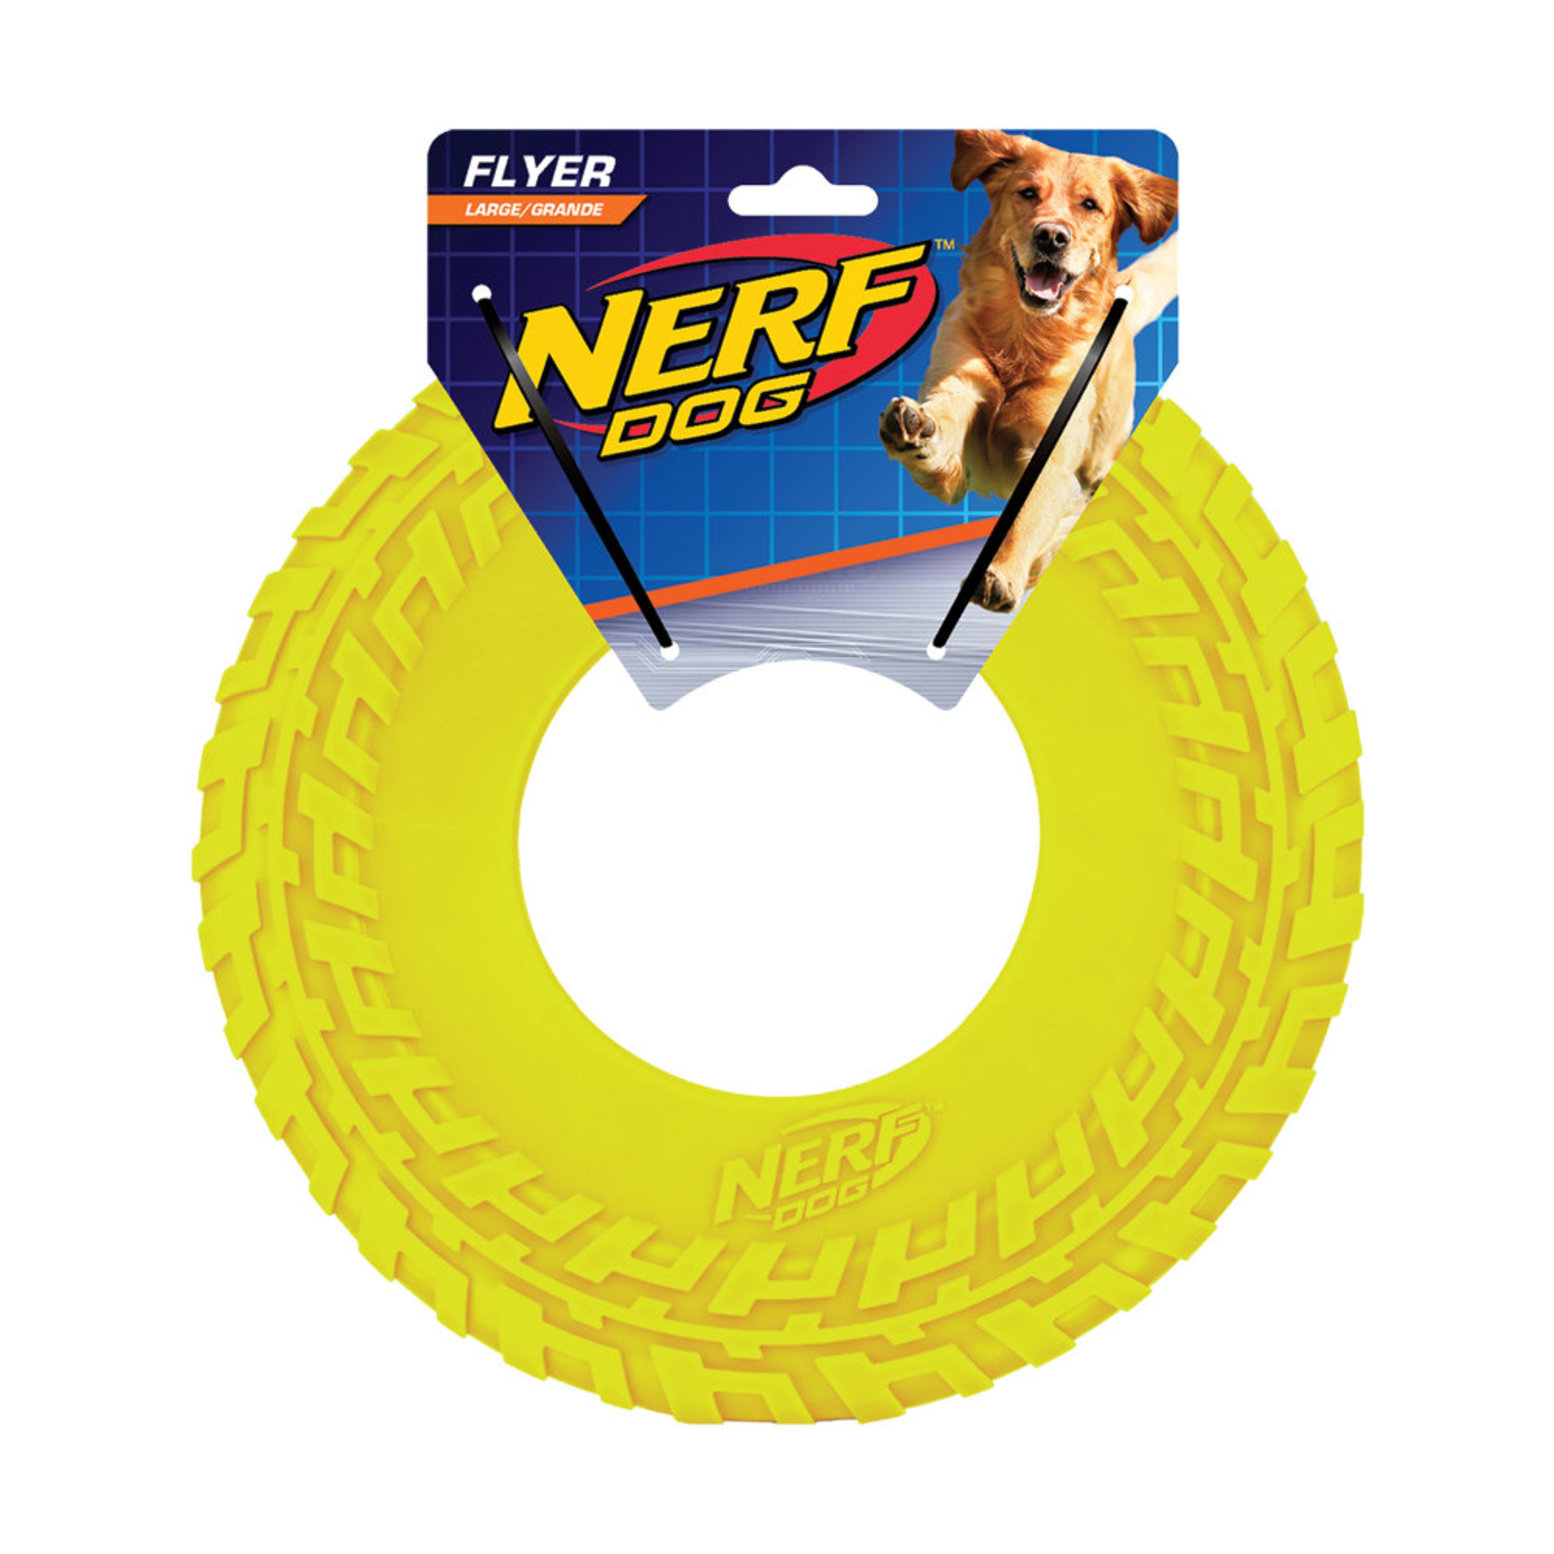 Nerf Dog LARGE Tire Feeder